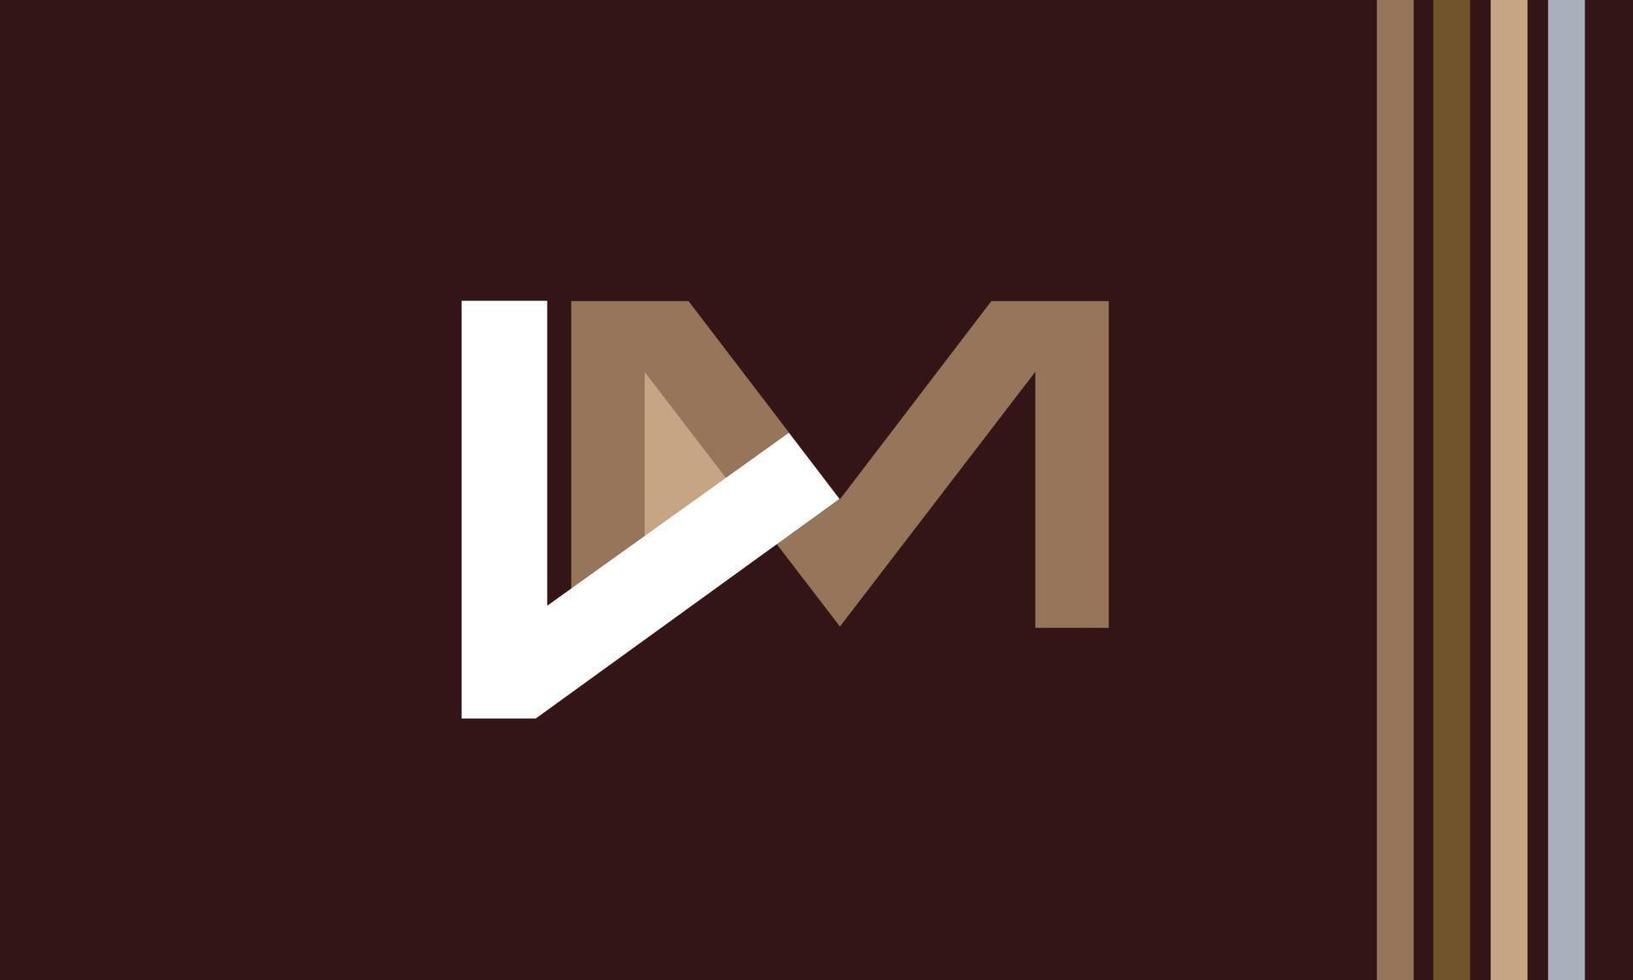 letras do alfabeto iniciais monograma logotipo lm, ml, le m vetor